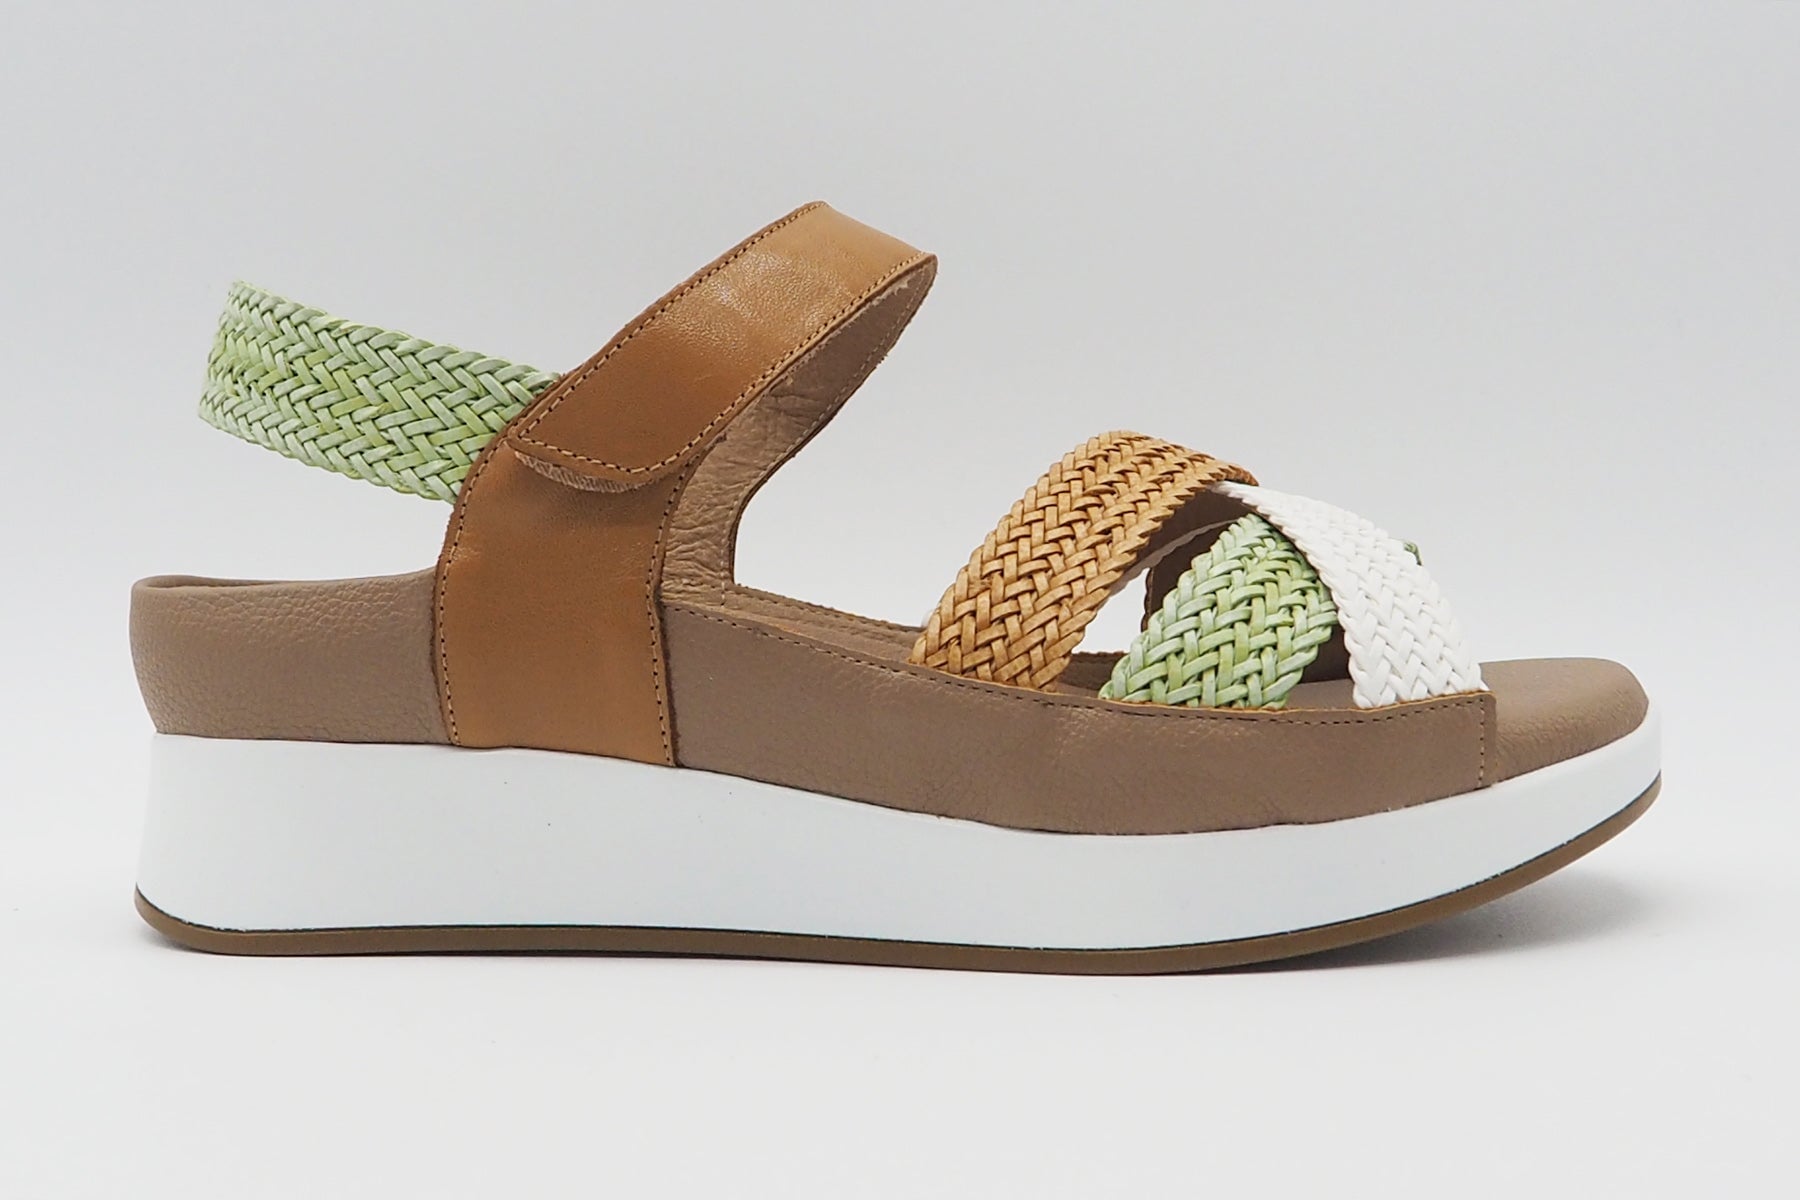 Damen Sandale aus geflochtenem Leder in Natur, Mint & Weiß - Absatz 2,5cm Damen Sandalen PieSanto 